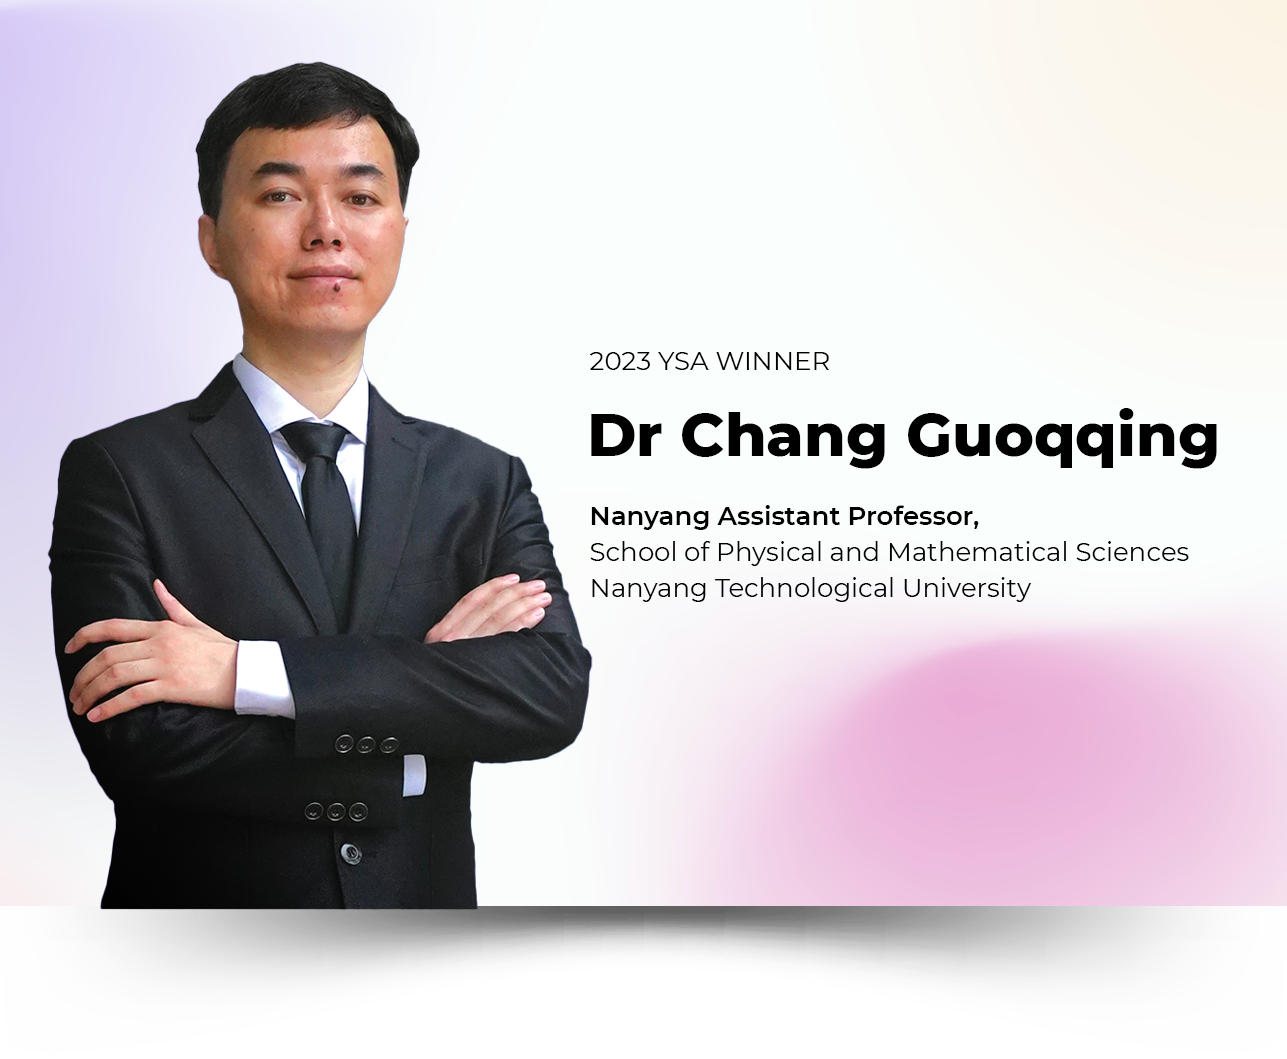 Dr Chang Guoqing